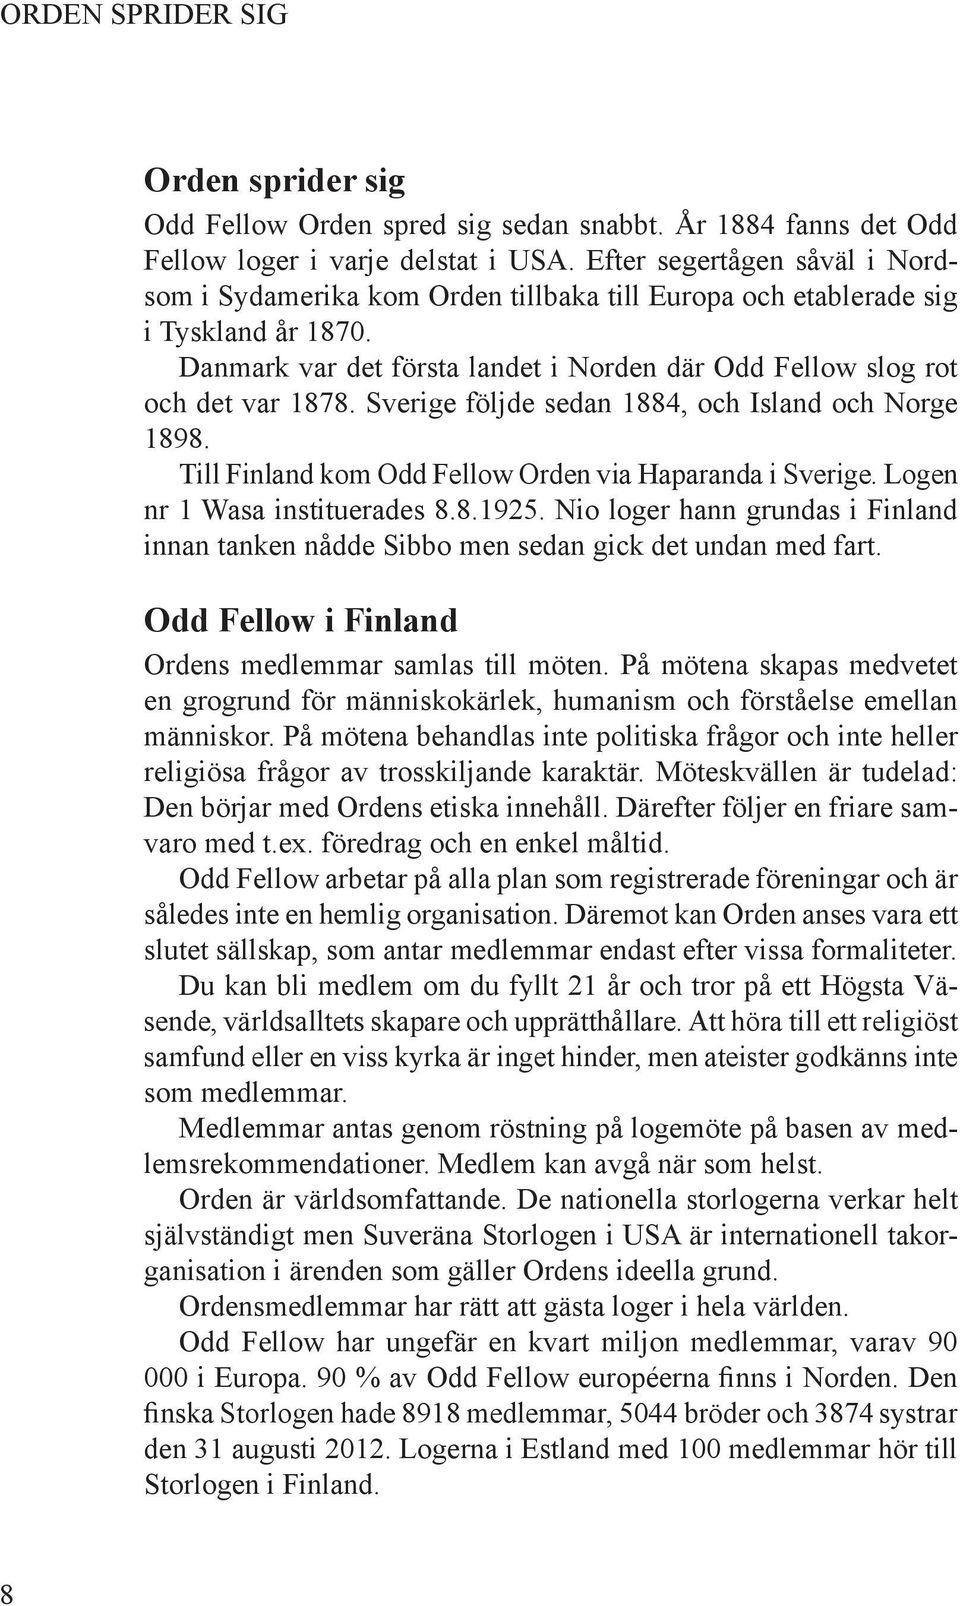 Sverige följde sedan 1884, och Island och Norge 1898. Till Finland kom Odd Fellow Orden via Haparanda i Sverige. Logen nr 1 Wasa instituerades 8.8.1925.